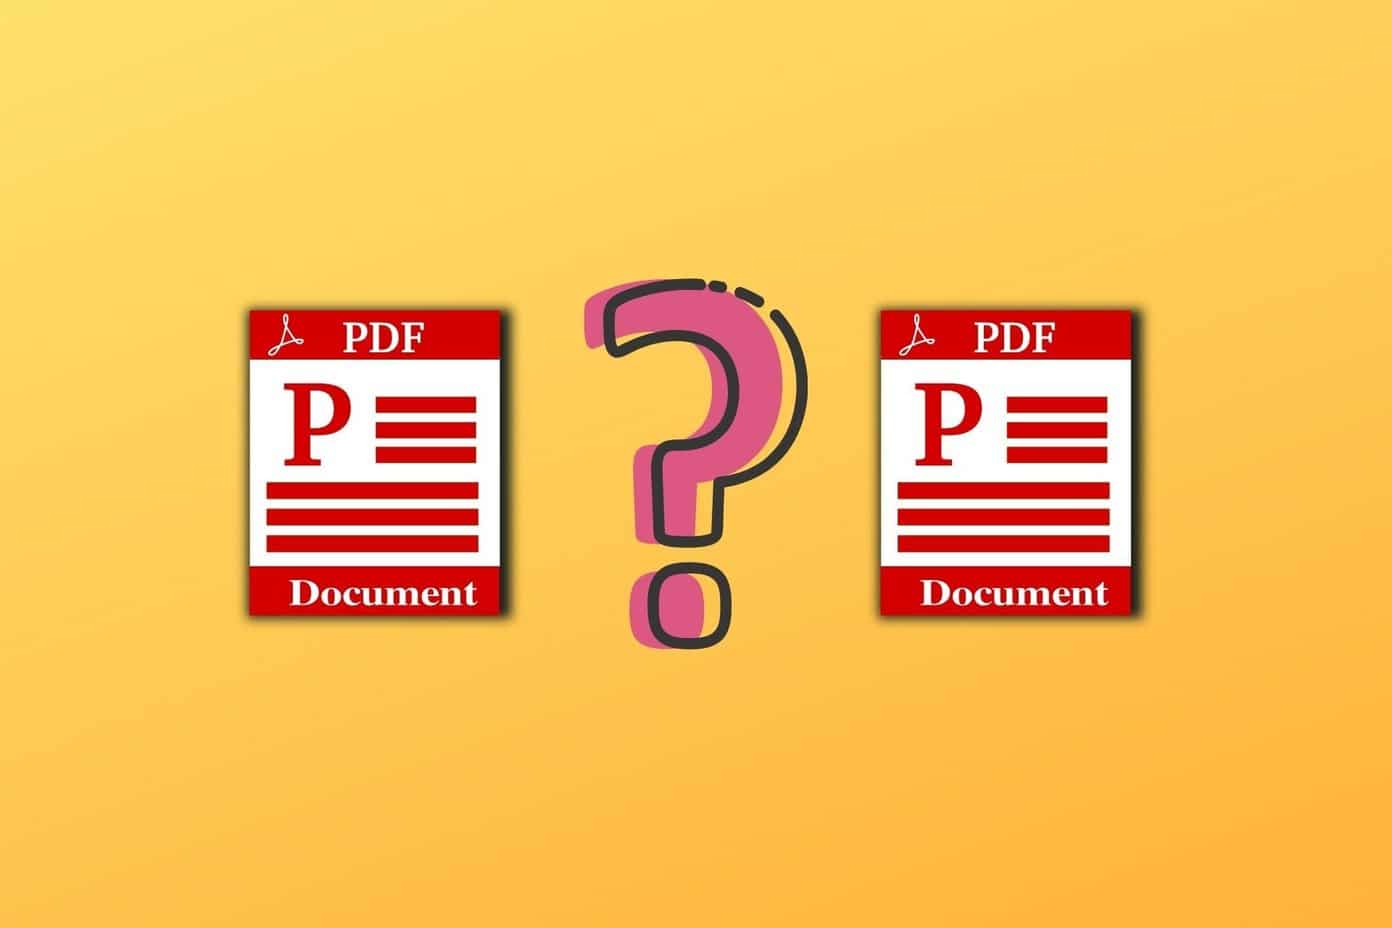 Compara dos archivos PDF uno al lado del otro